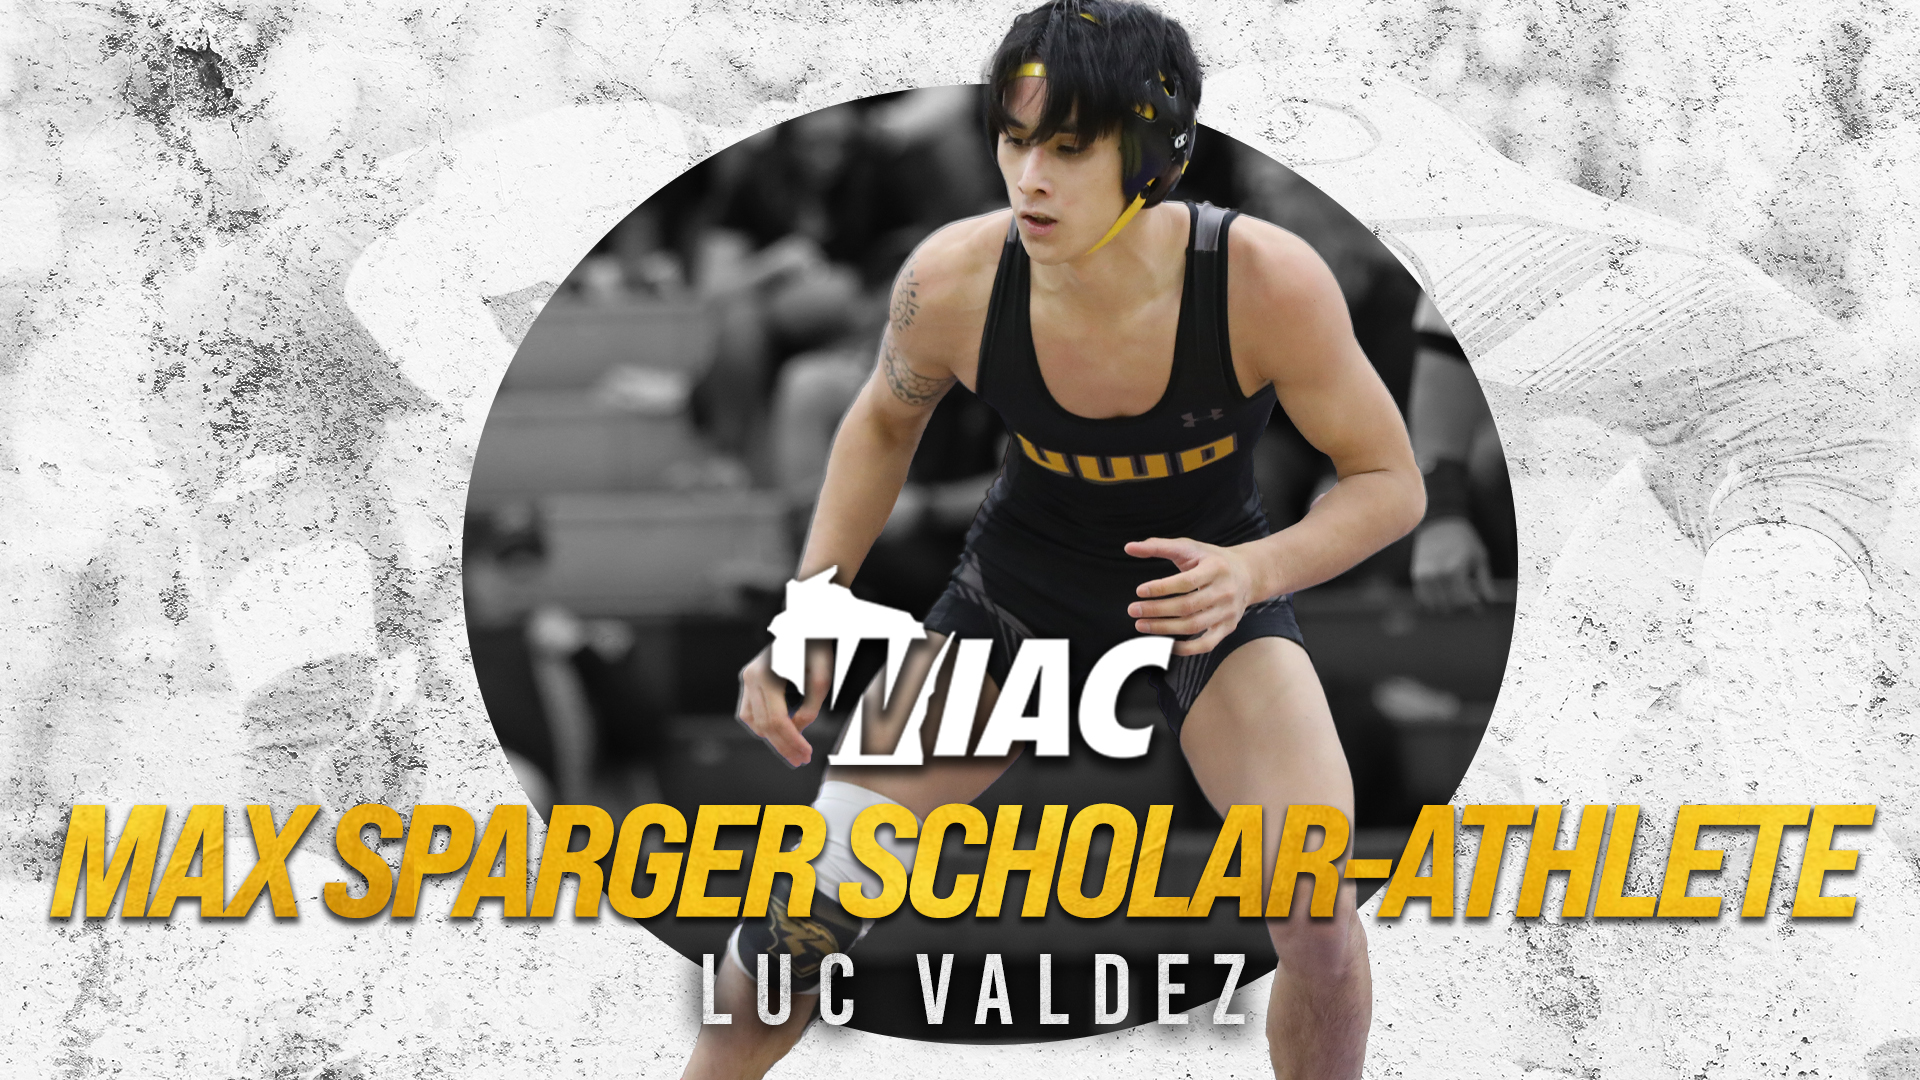 Valdez Named Max Sparger Scholar-Athlete